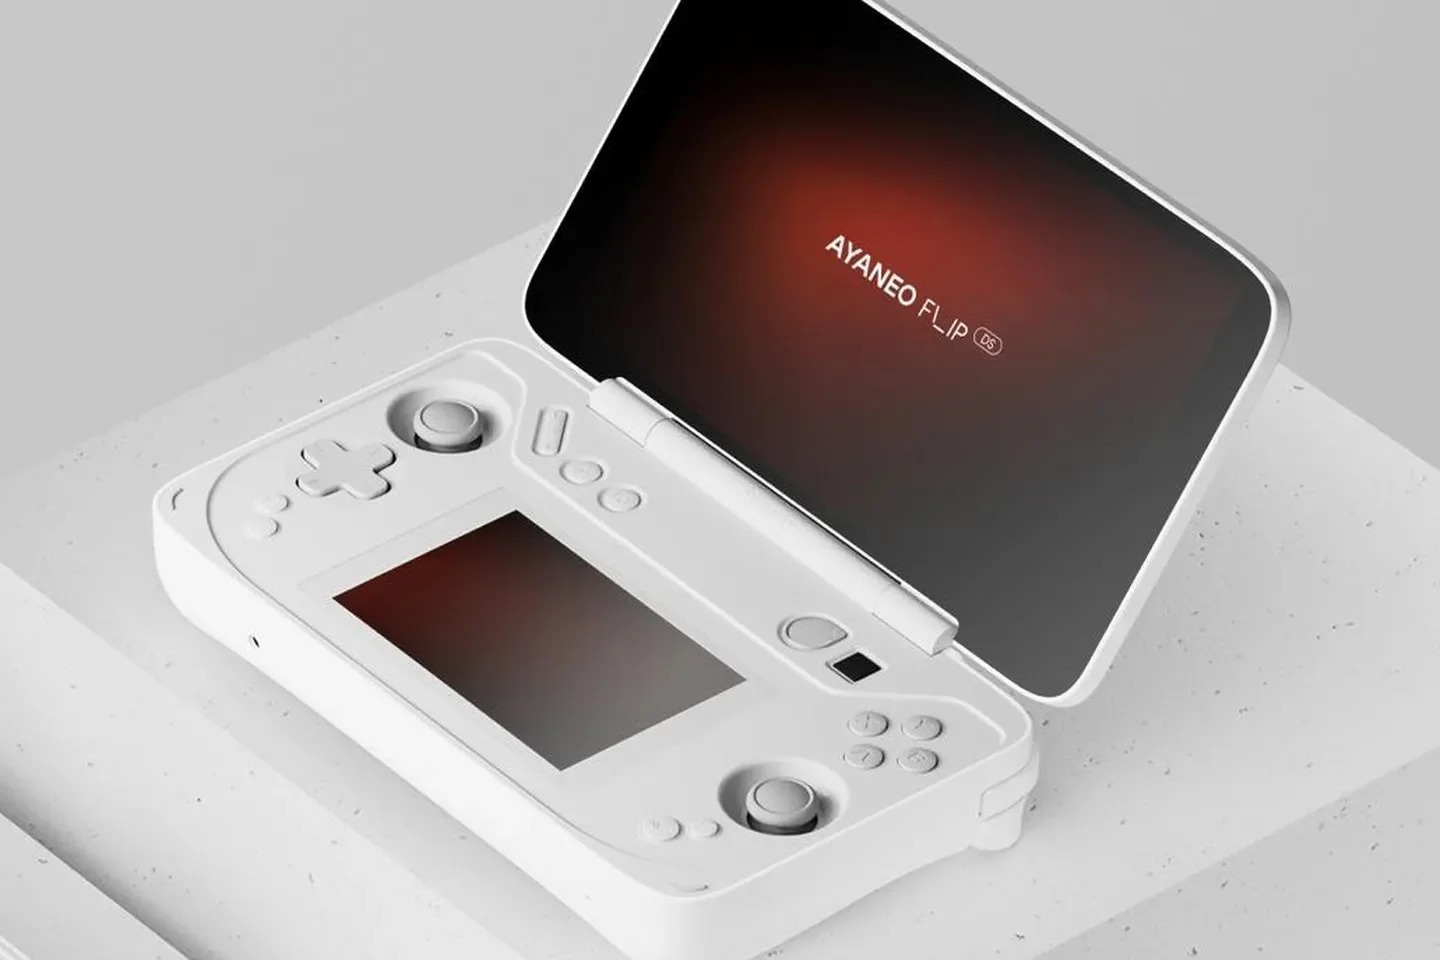 Ecco anche la nuova handheld che copia Nintendo 3DS